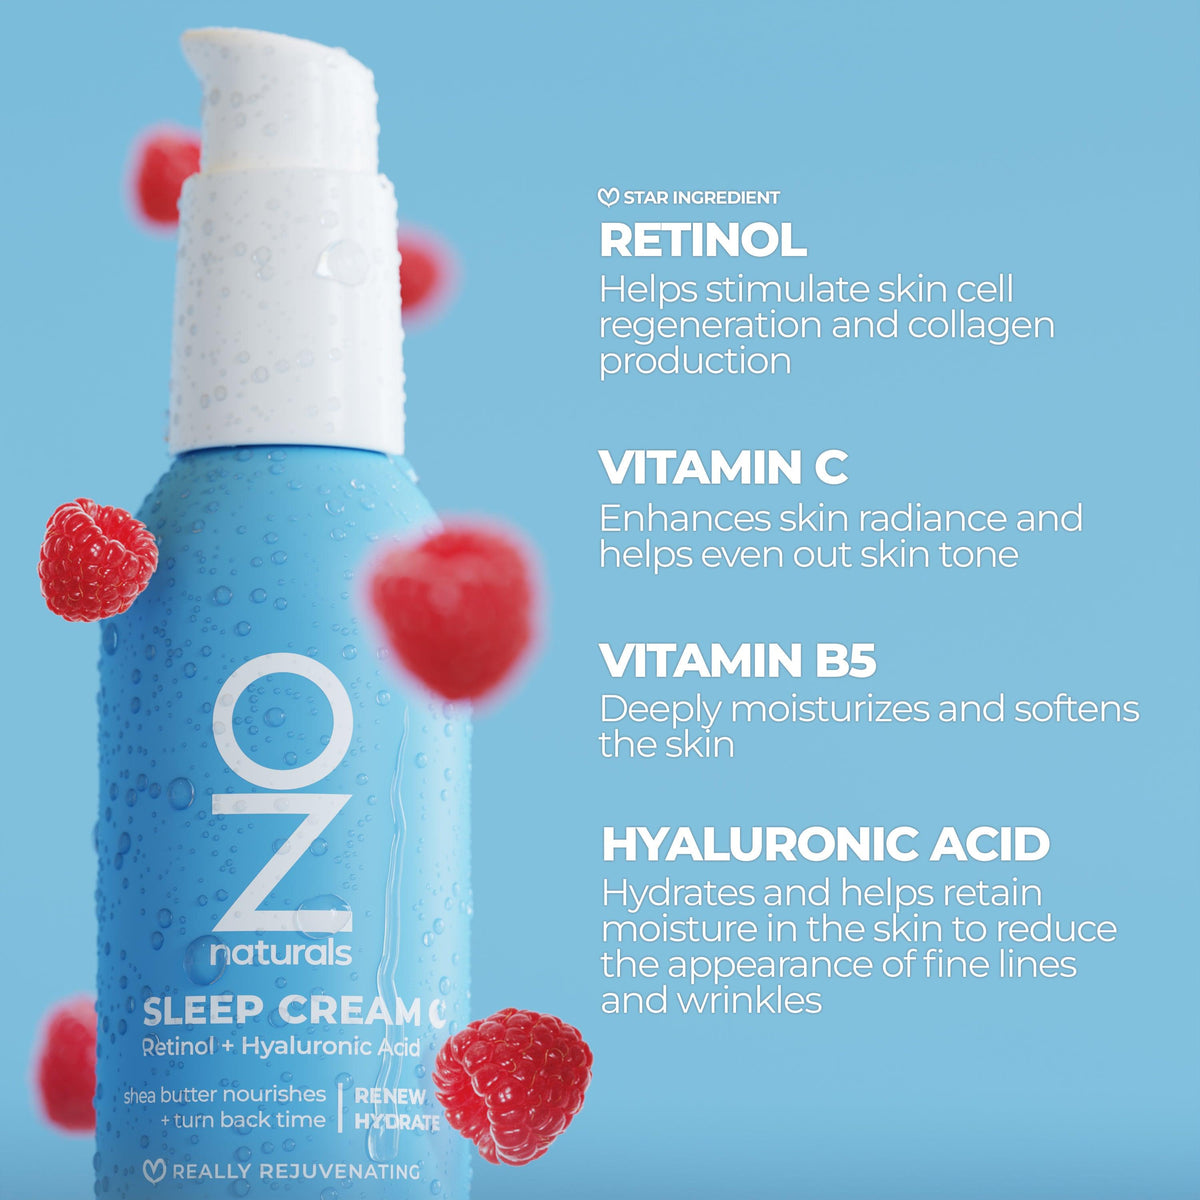 OZ Naturals - Sleep Cream Retinol + Hyaluronic Acid 89ml